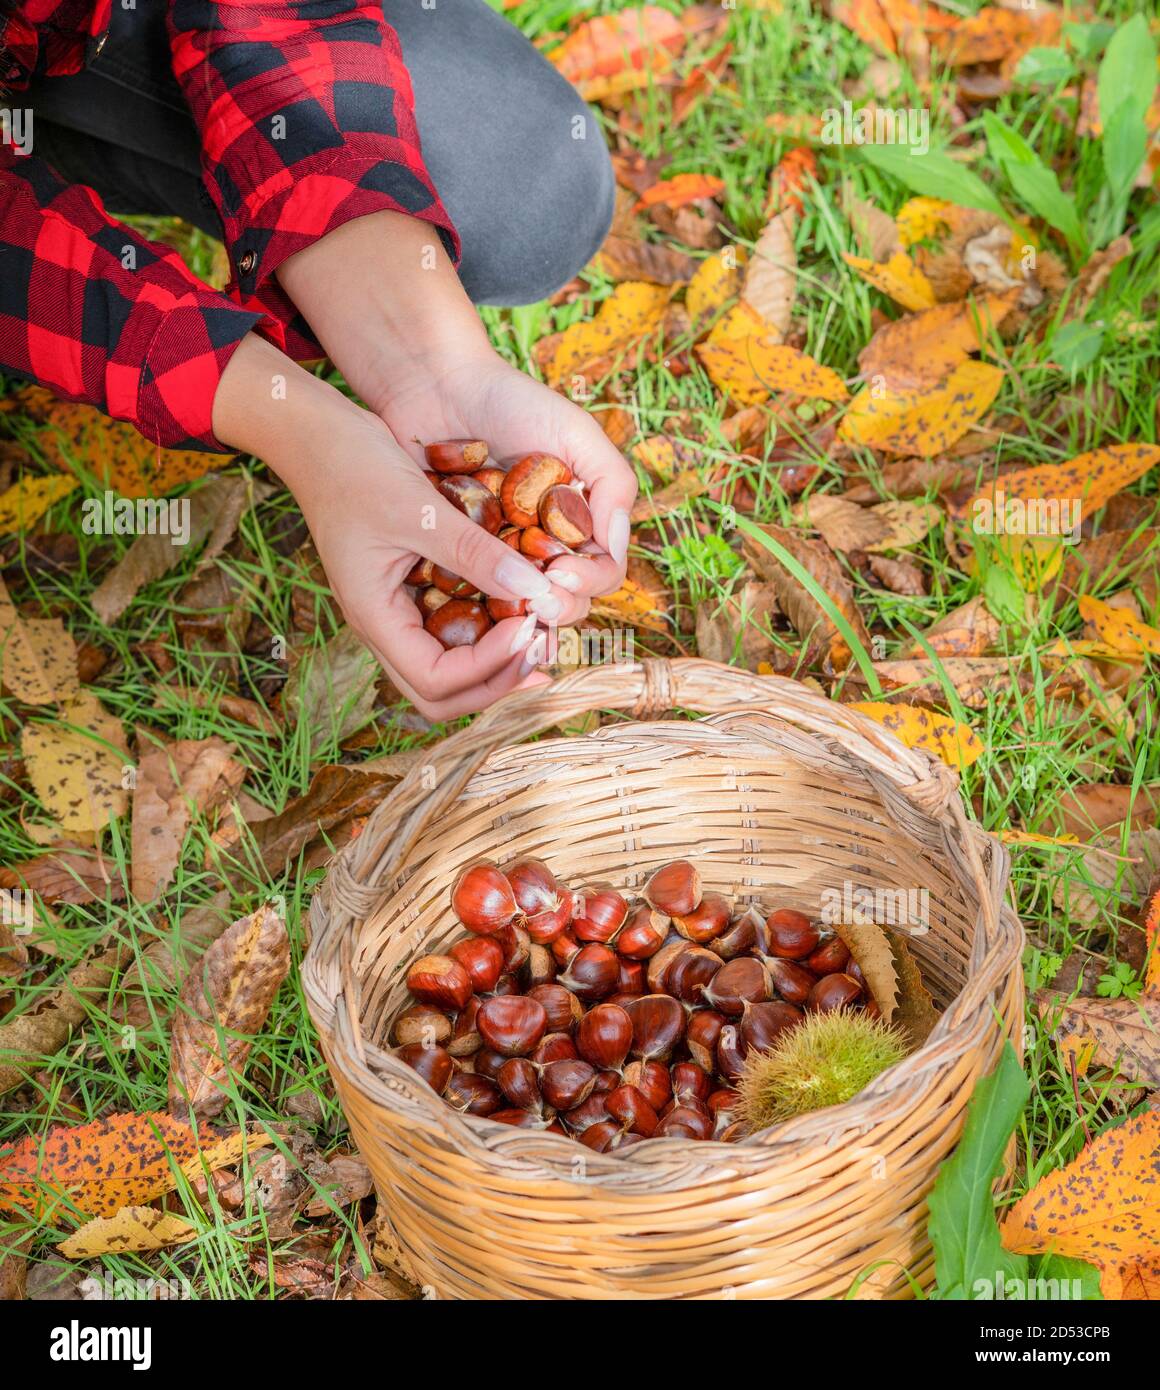 Frau sammelt einen Korb von Kastanien im Wald, sardische Kastanien, aritzo Stockfoto